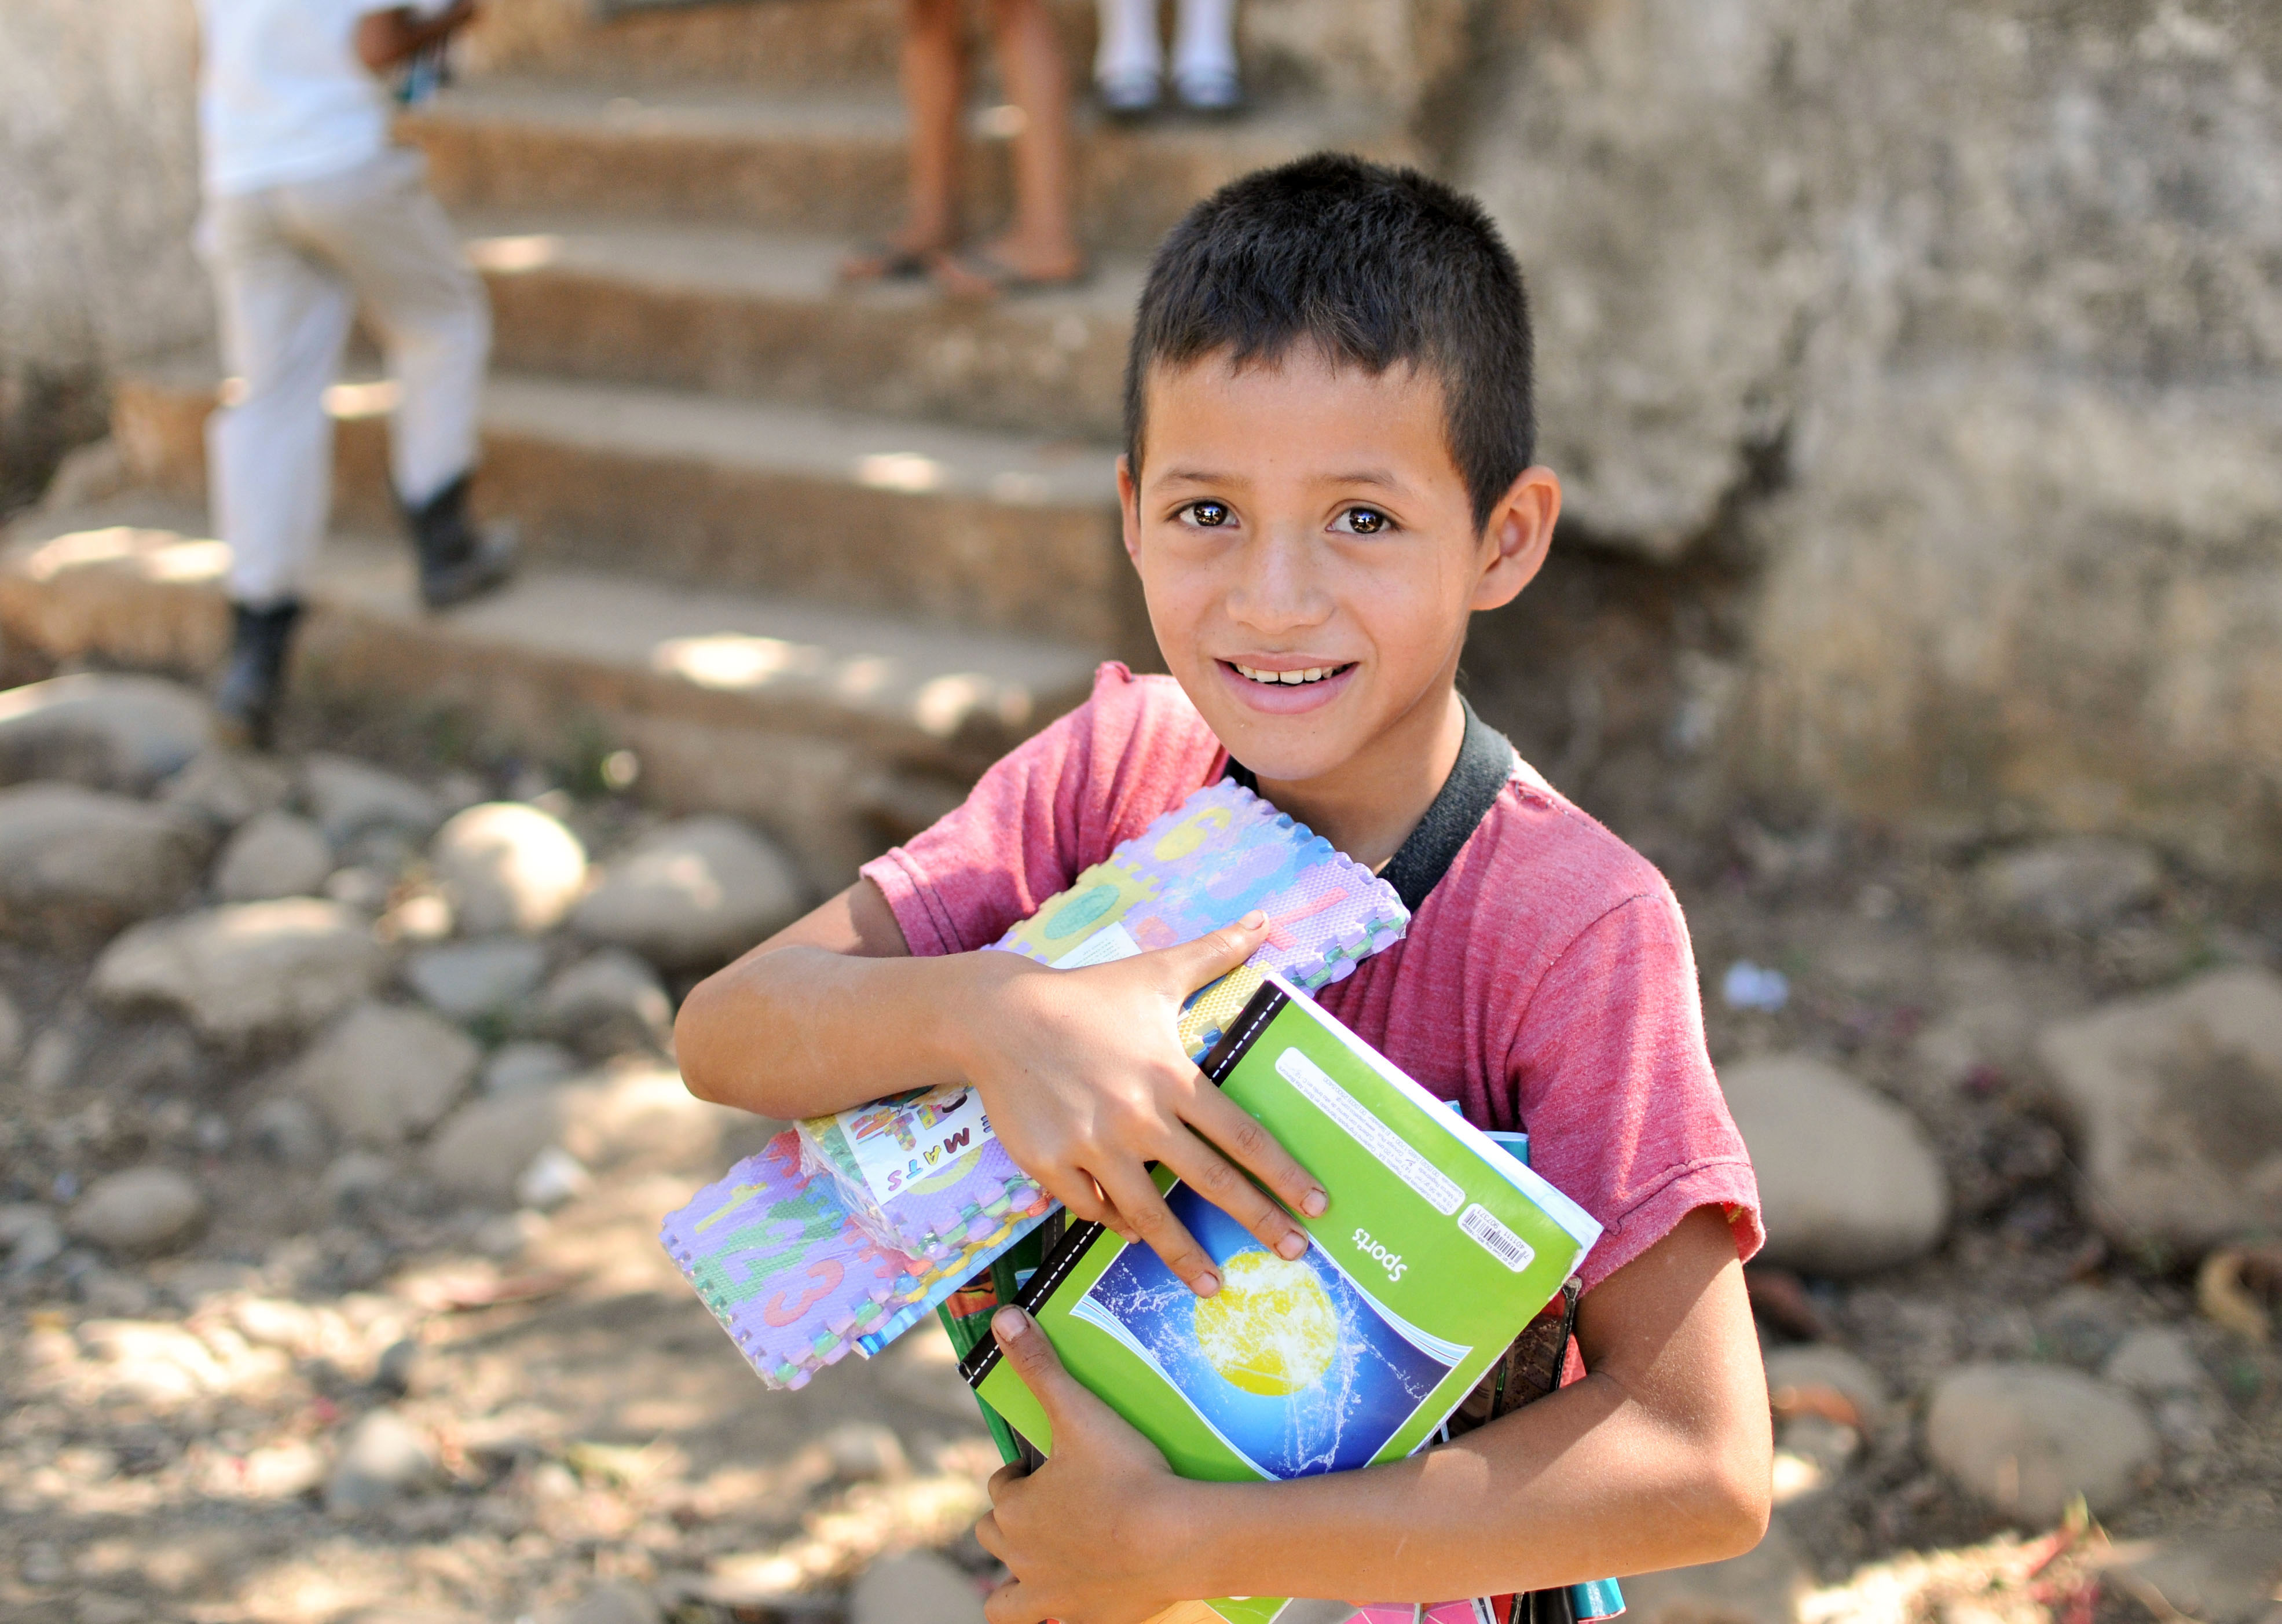 El proyecto  impulsa mejoras para el acceso a la formación primaria a través de donaciones de útiles escolares. (Foto Prensa Libre: Cortesía Amalia Jarquín)